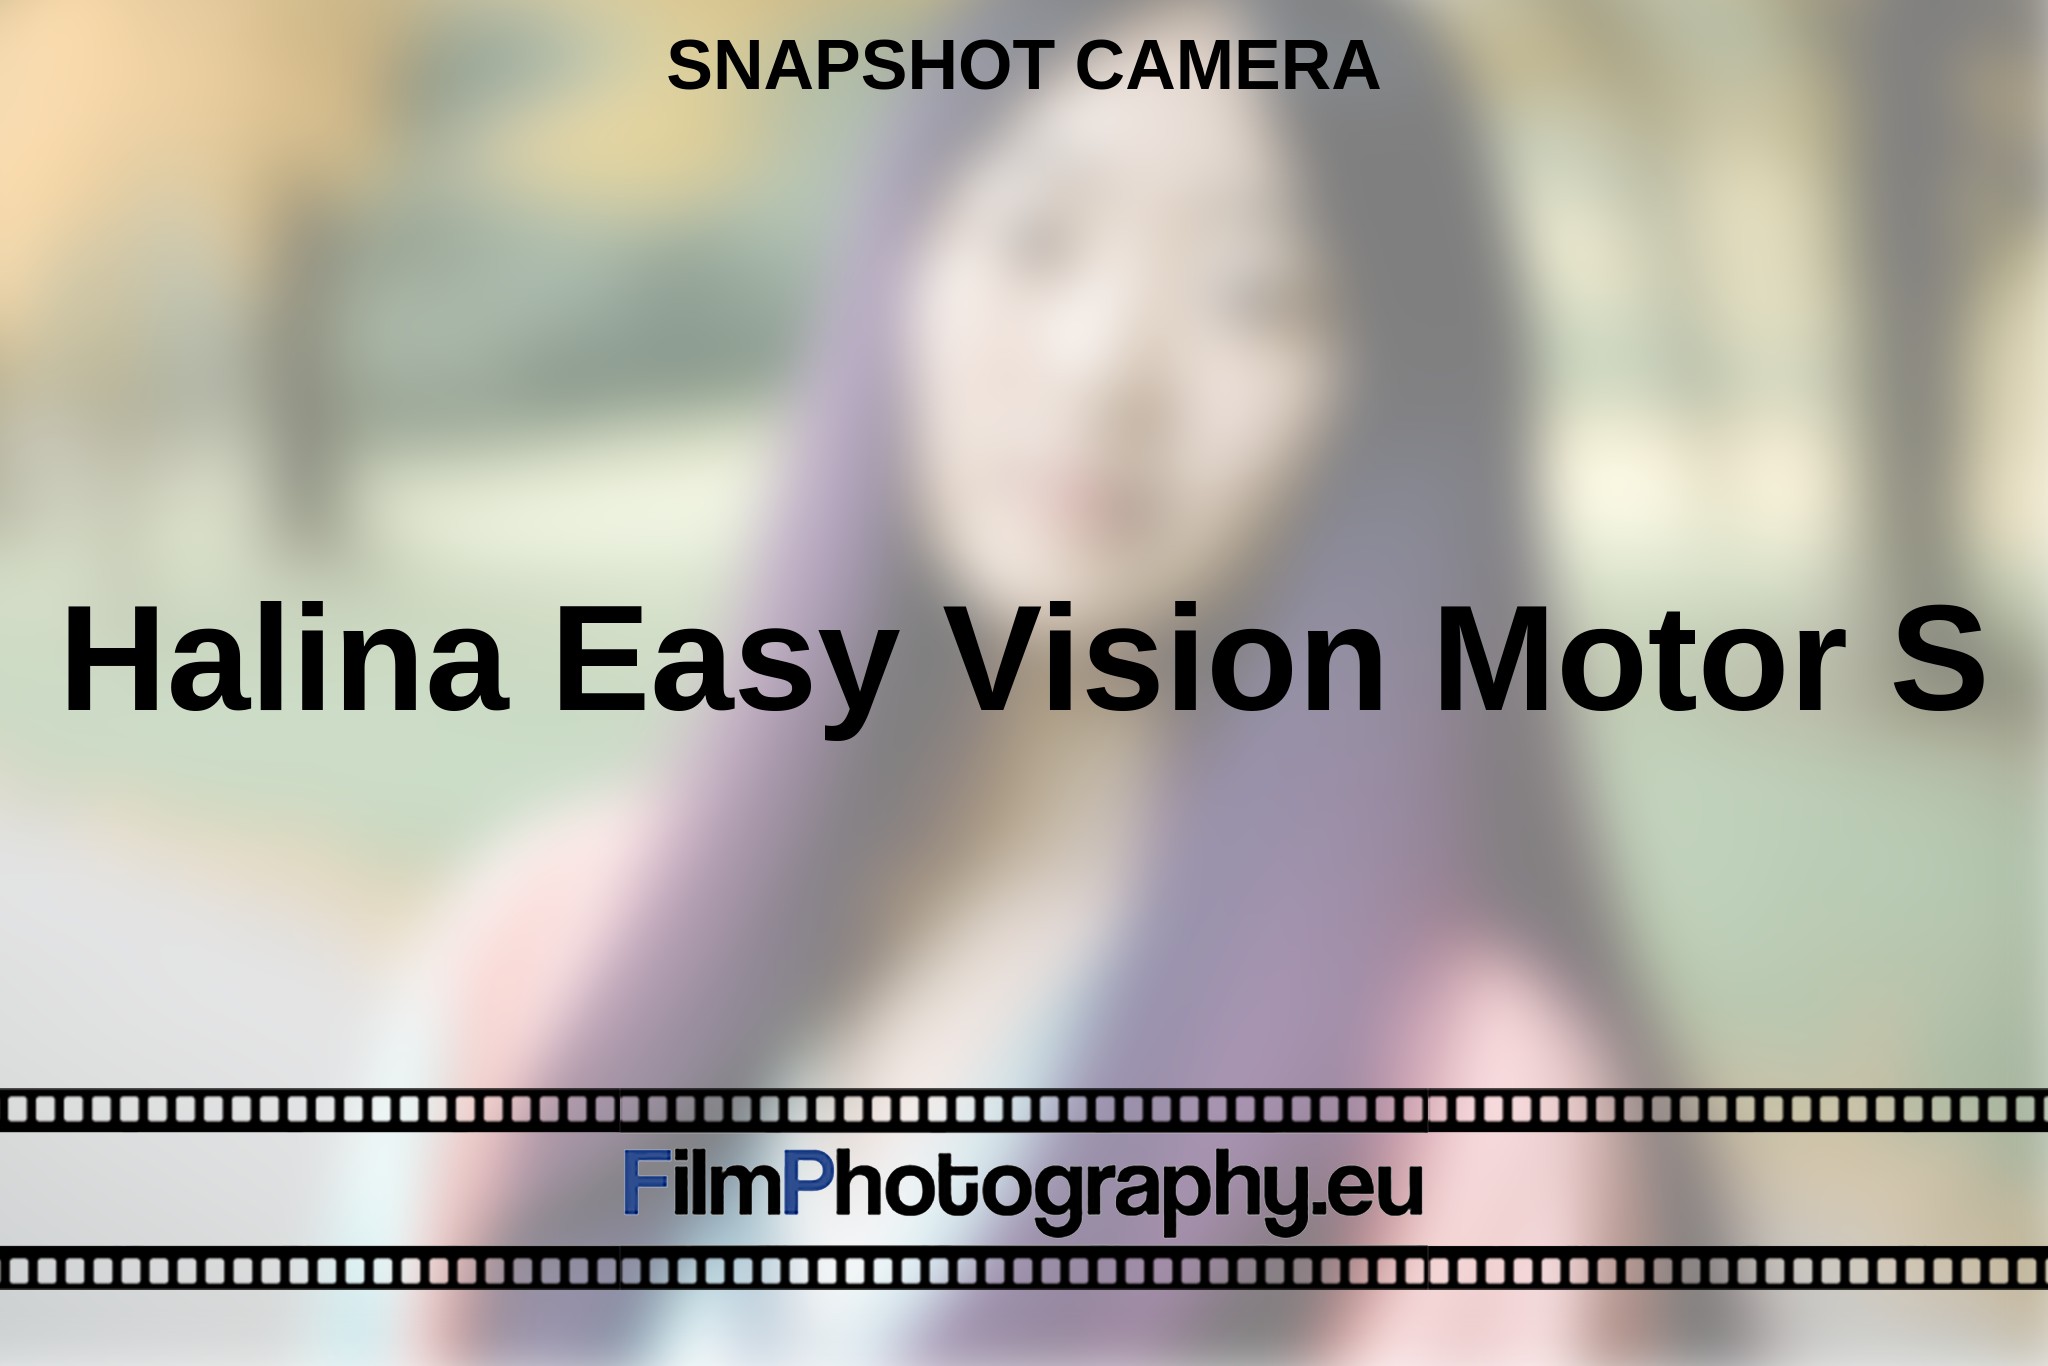 halina-easy-vision-motor-s-snapshot-camera-en-bnv.jpg